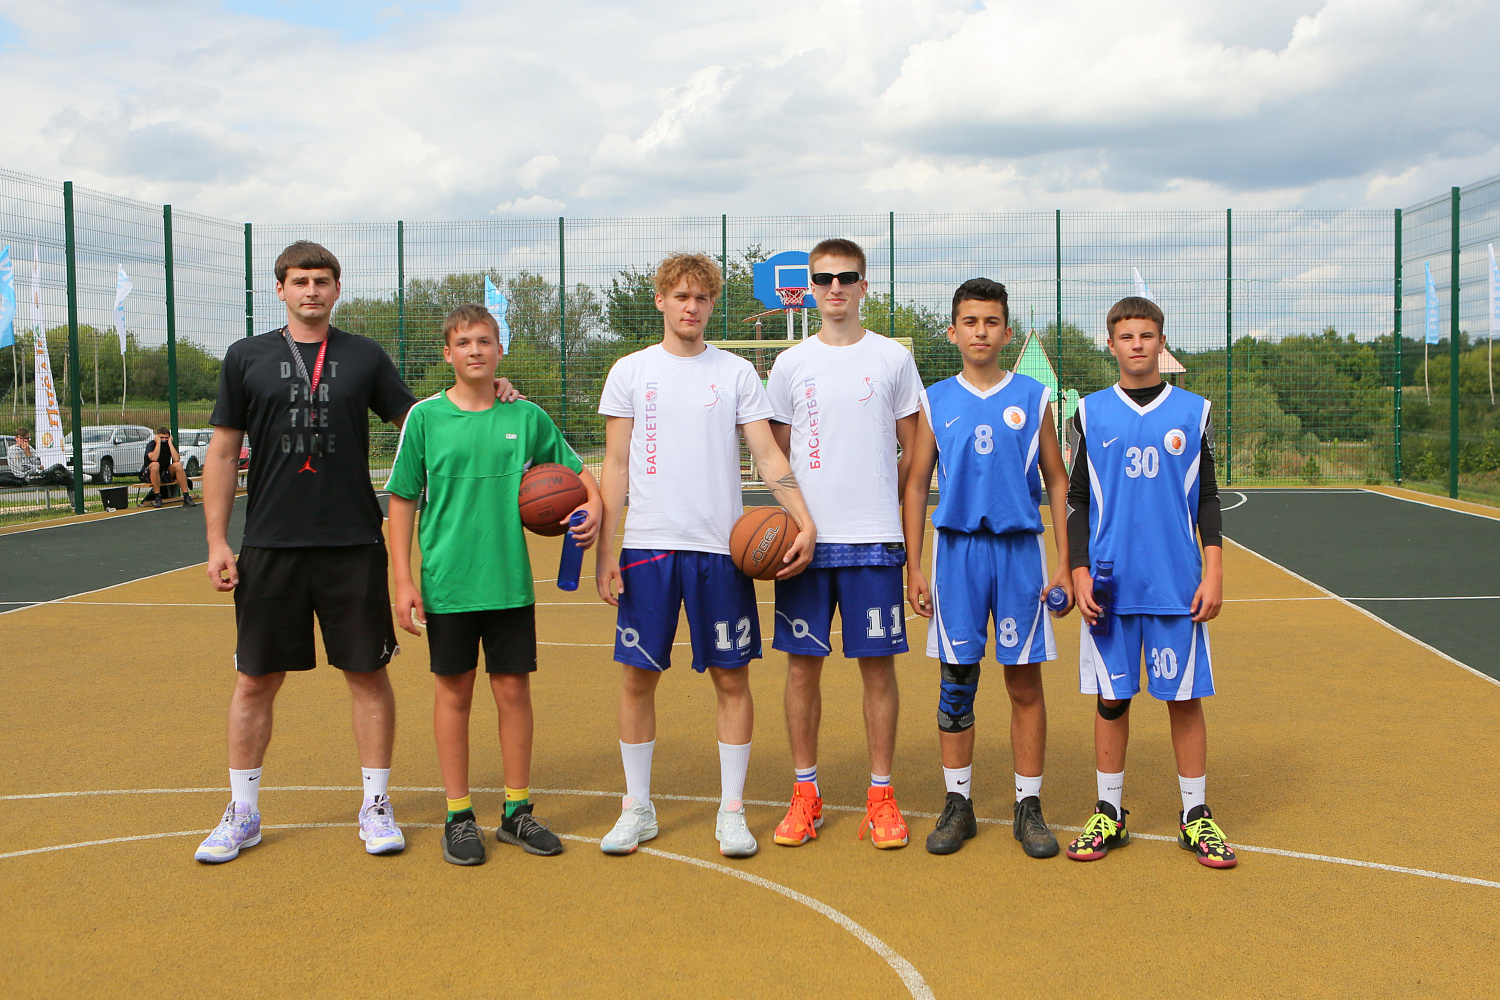 Определены победители II турнира по баскетболу, посвящённого 80-й годовщине победы в Курской битве